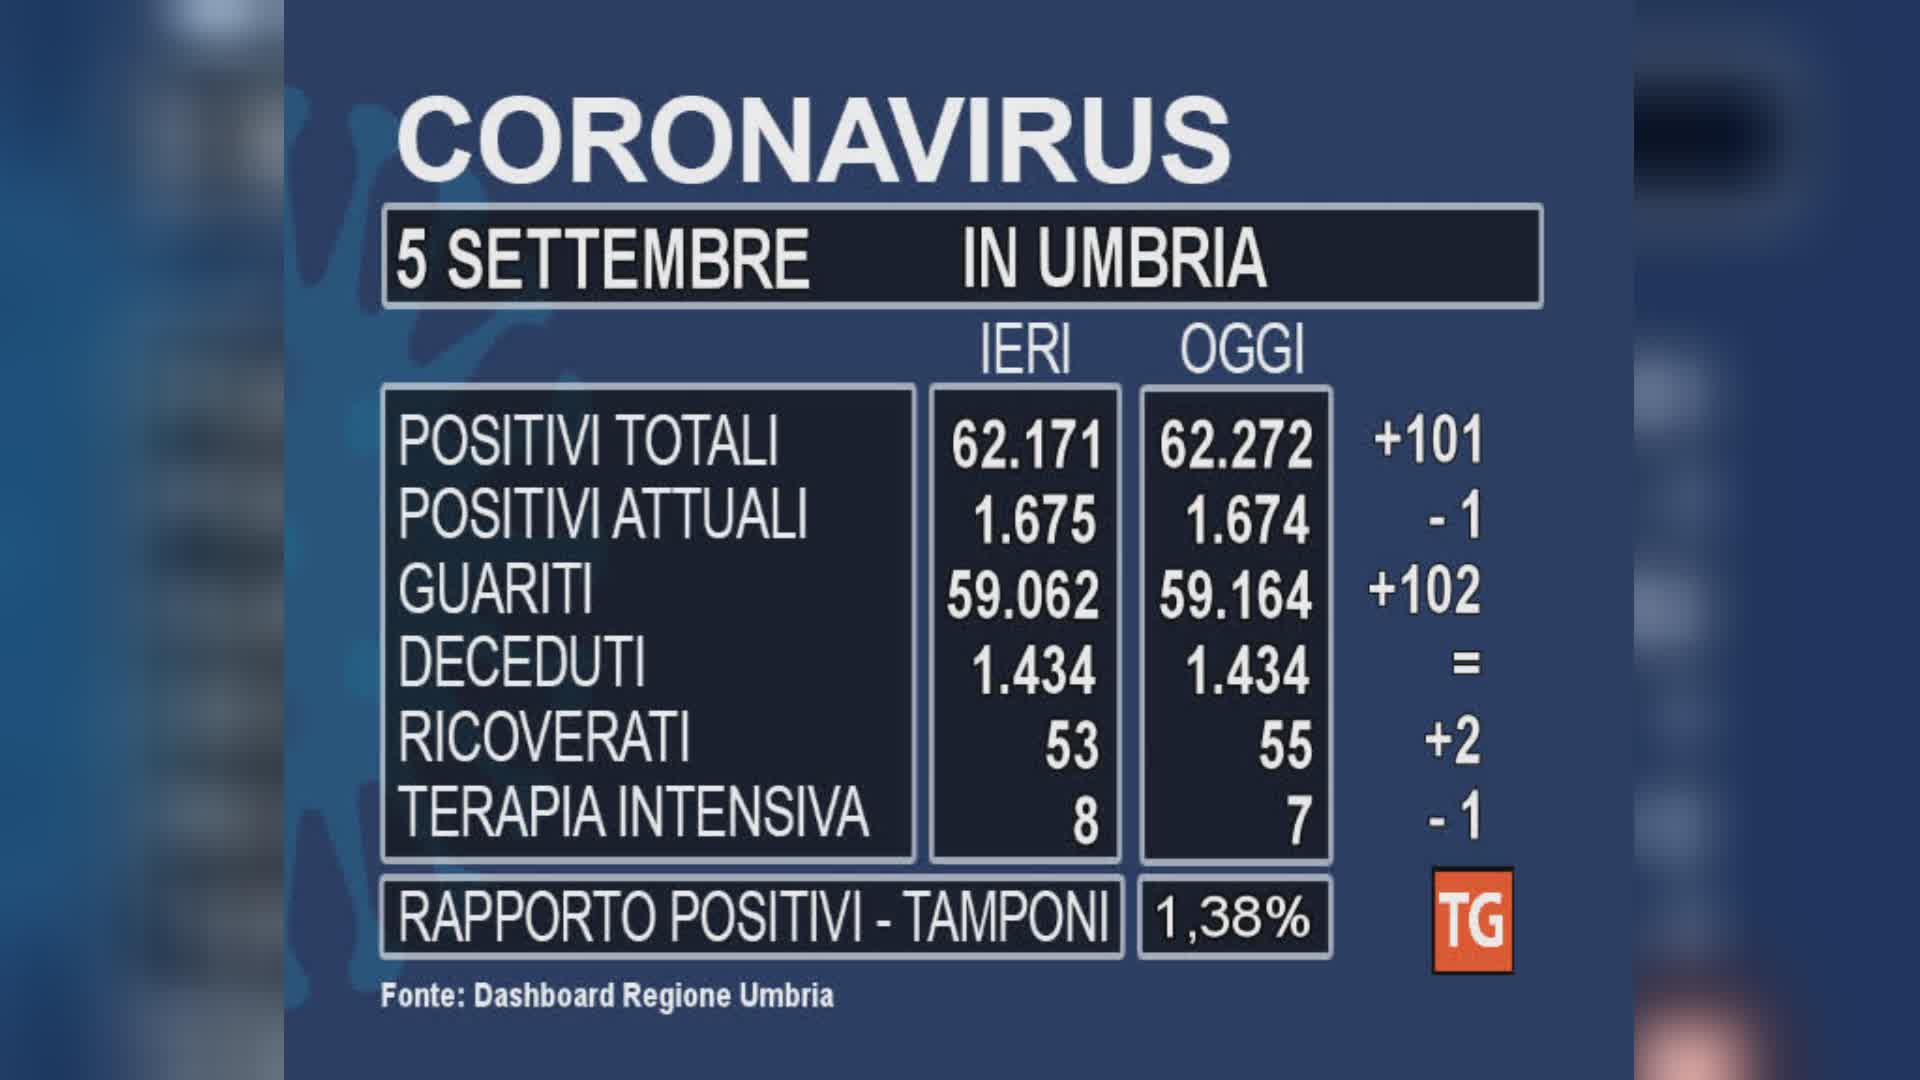 Positivi attuali costanti in Umbria, la curva non scende